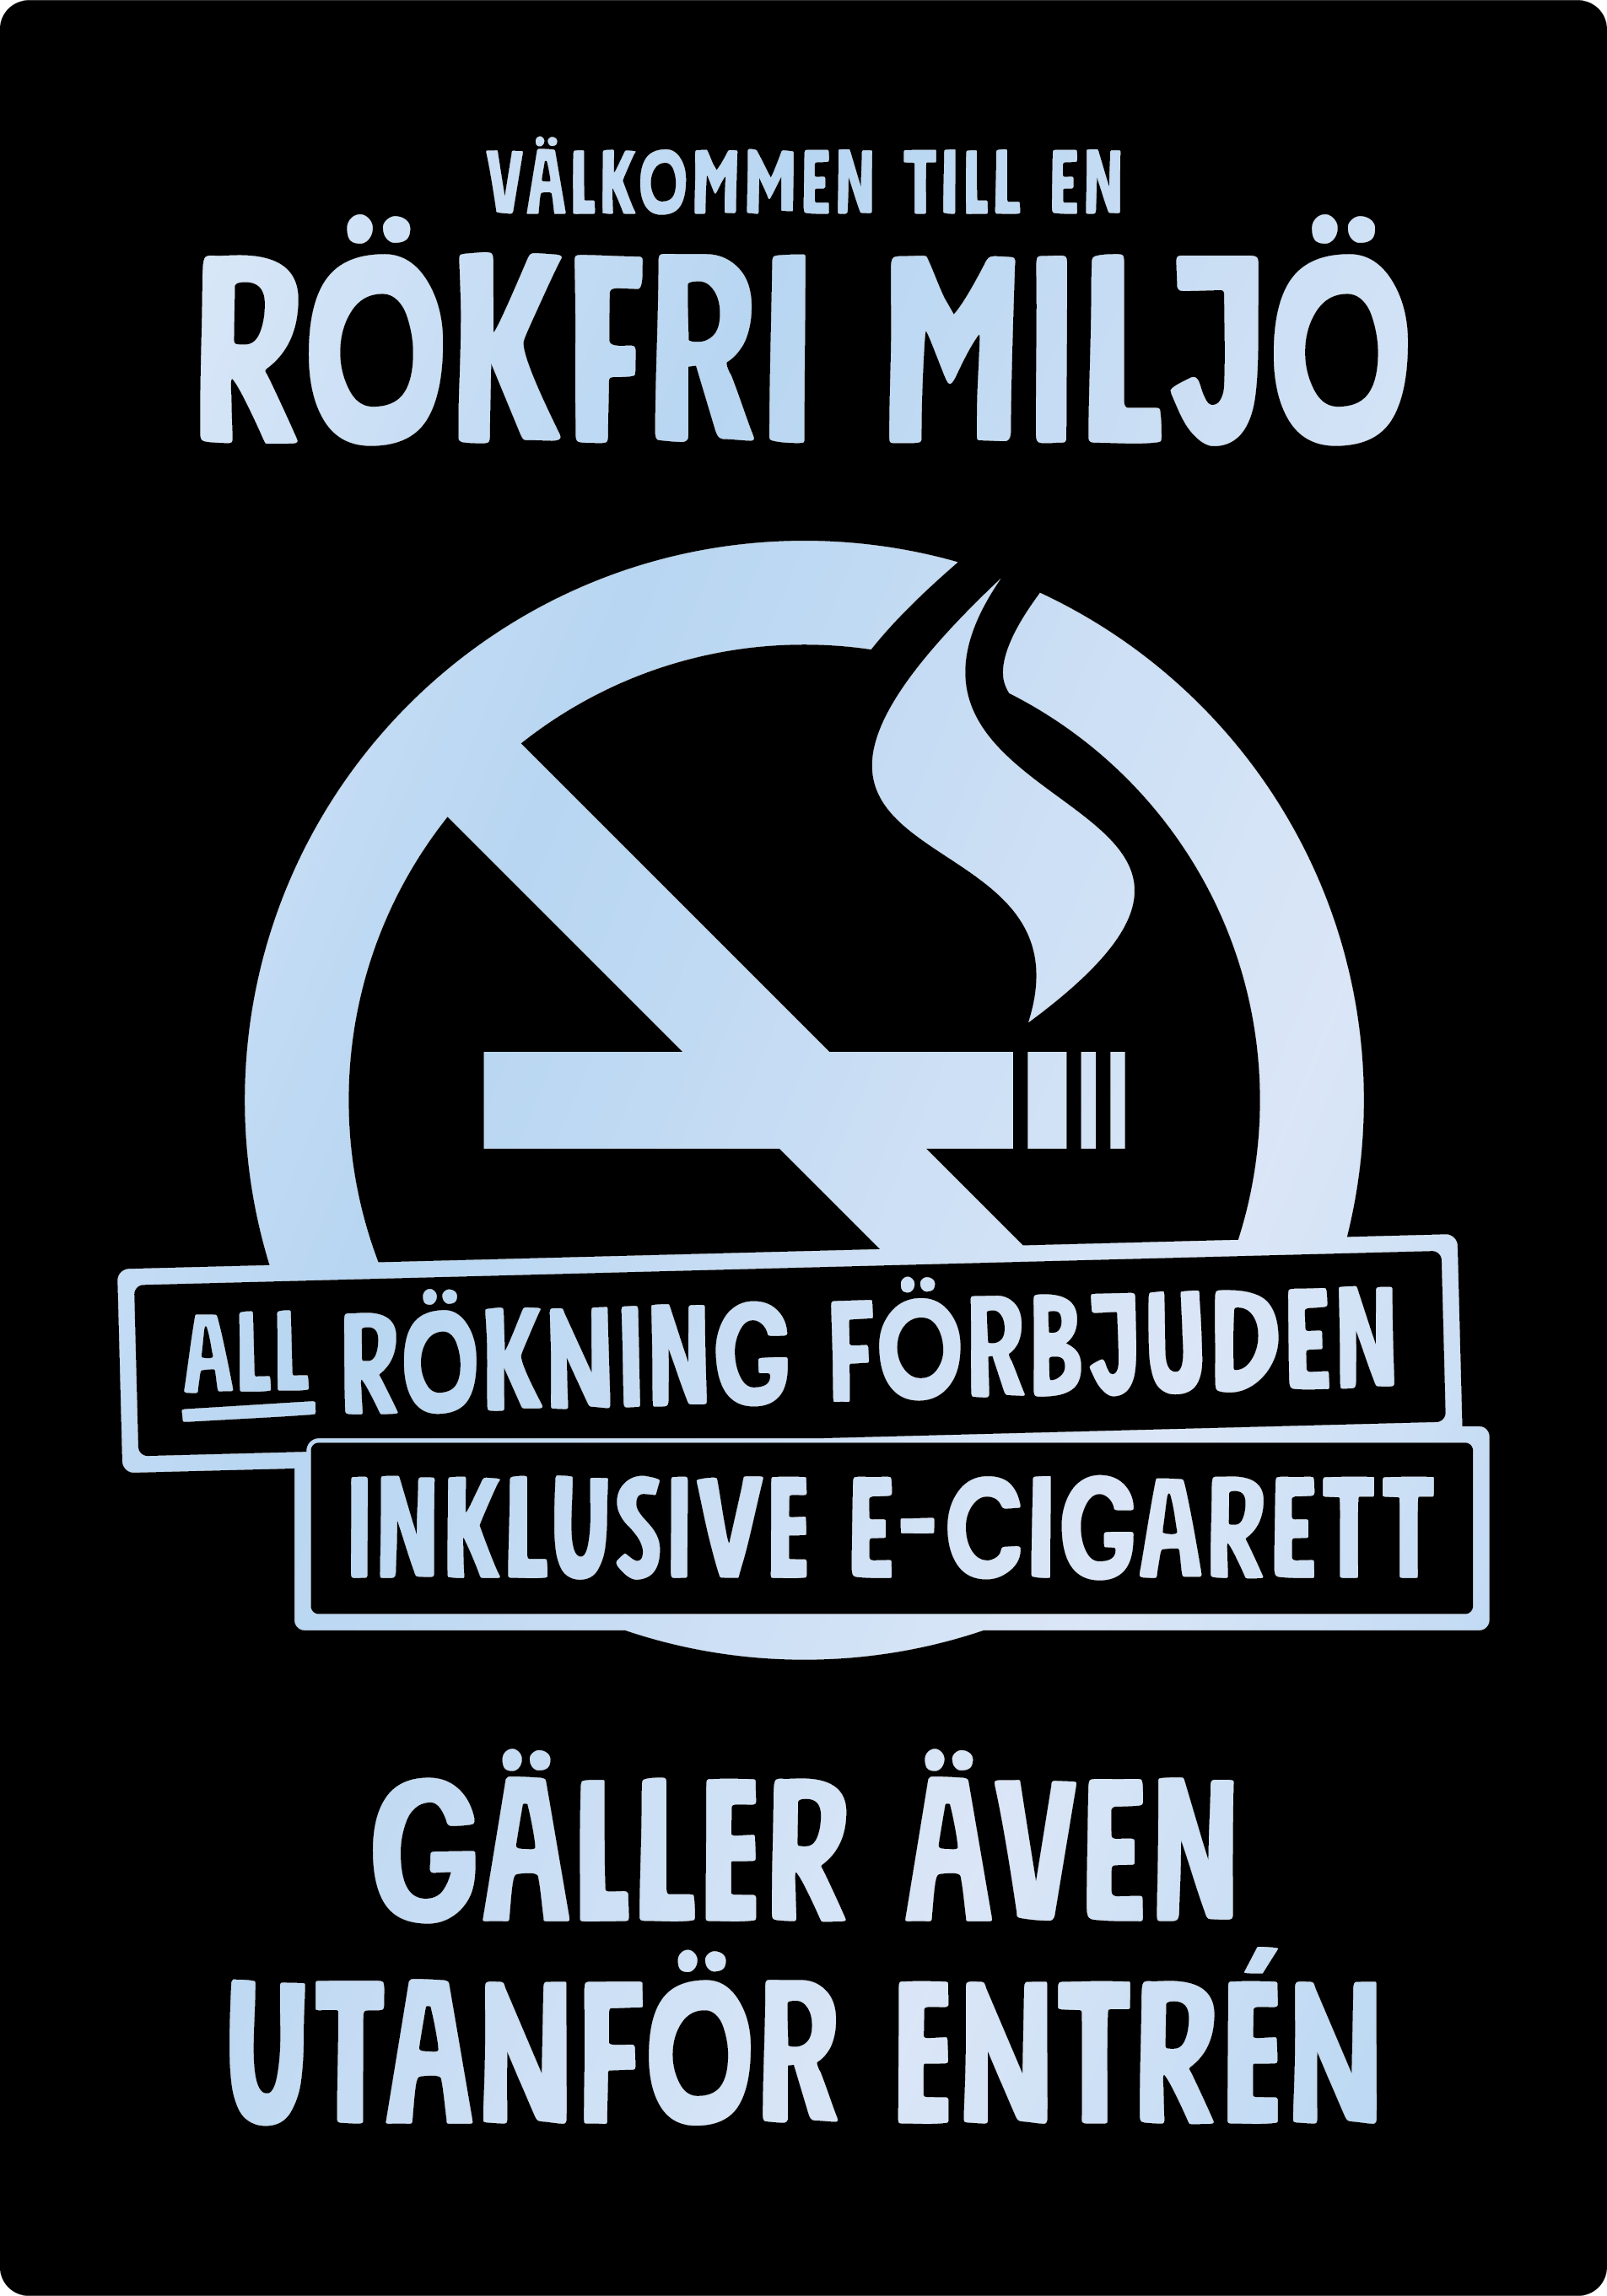 Bild rökförbudsskylt 04A15: Valfri PMS* / Transparent